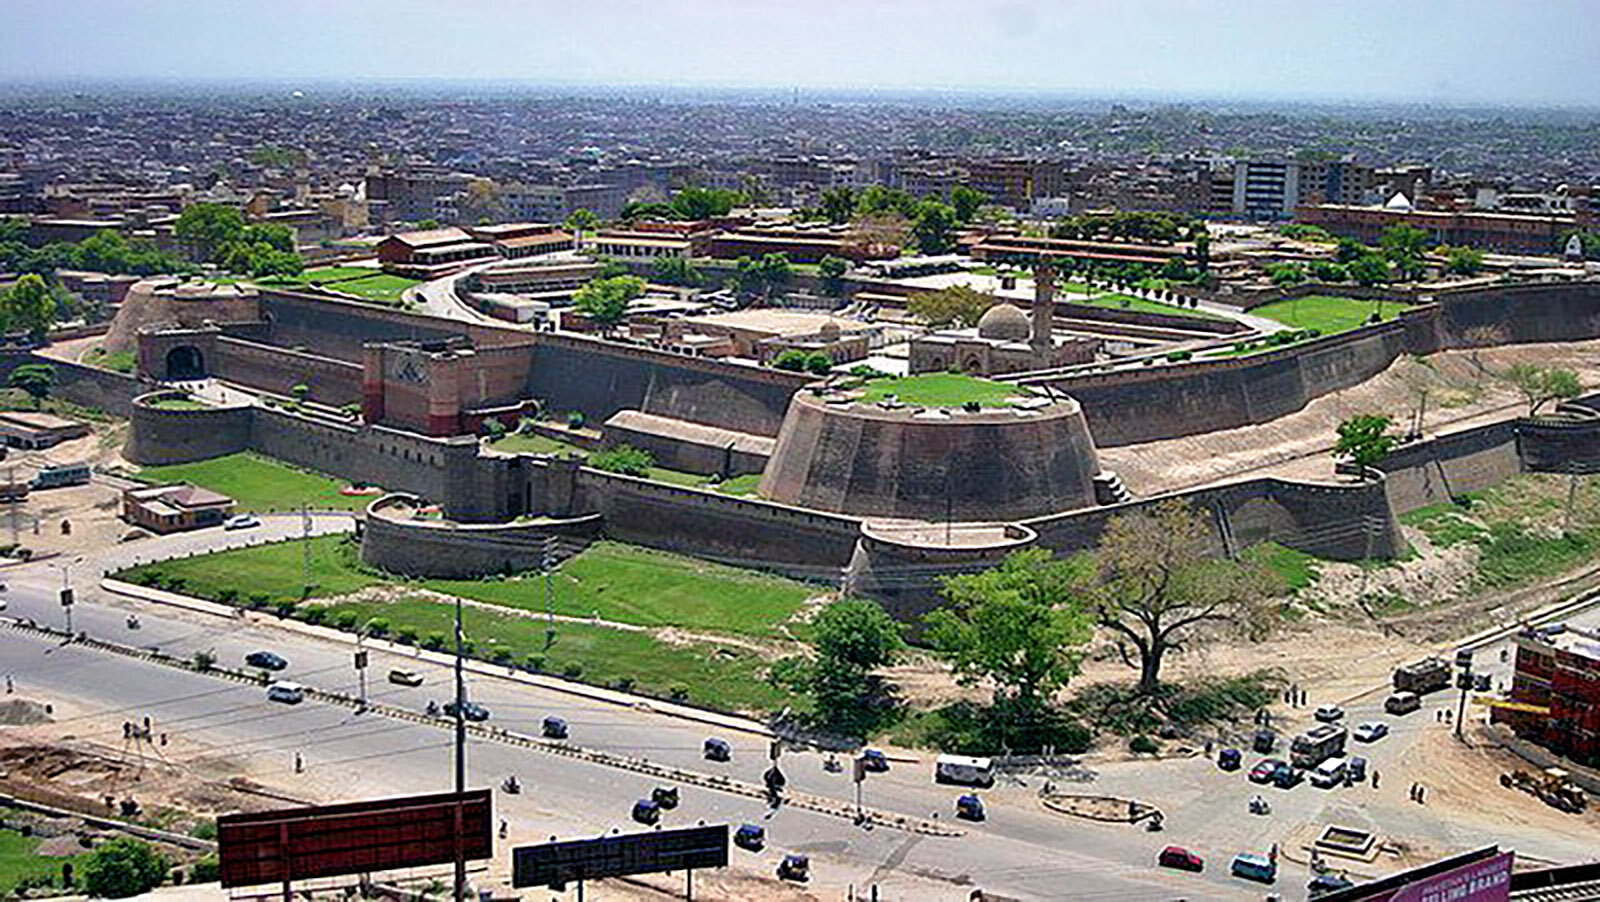 Bala Hissar Fort